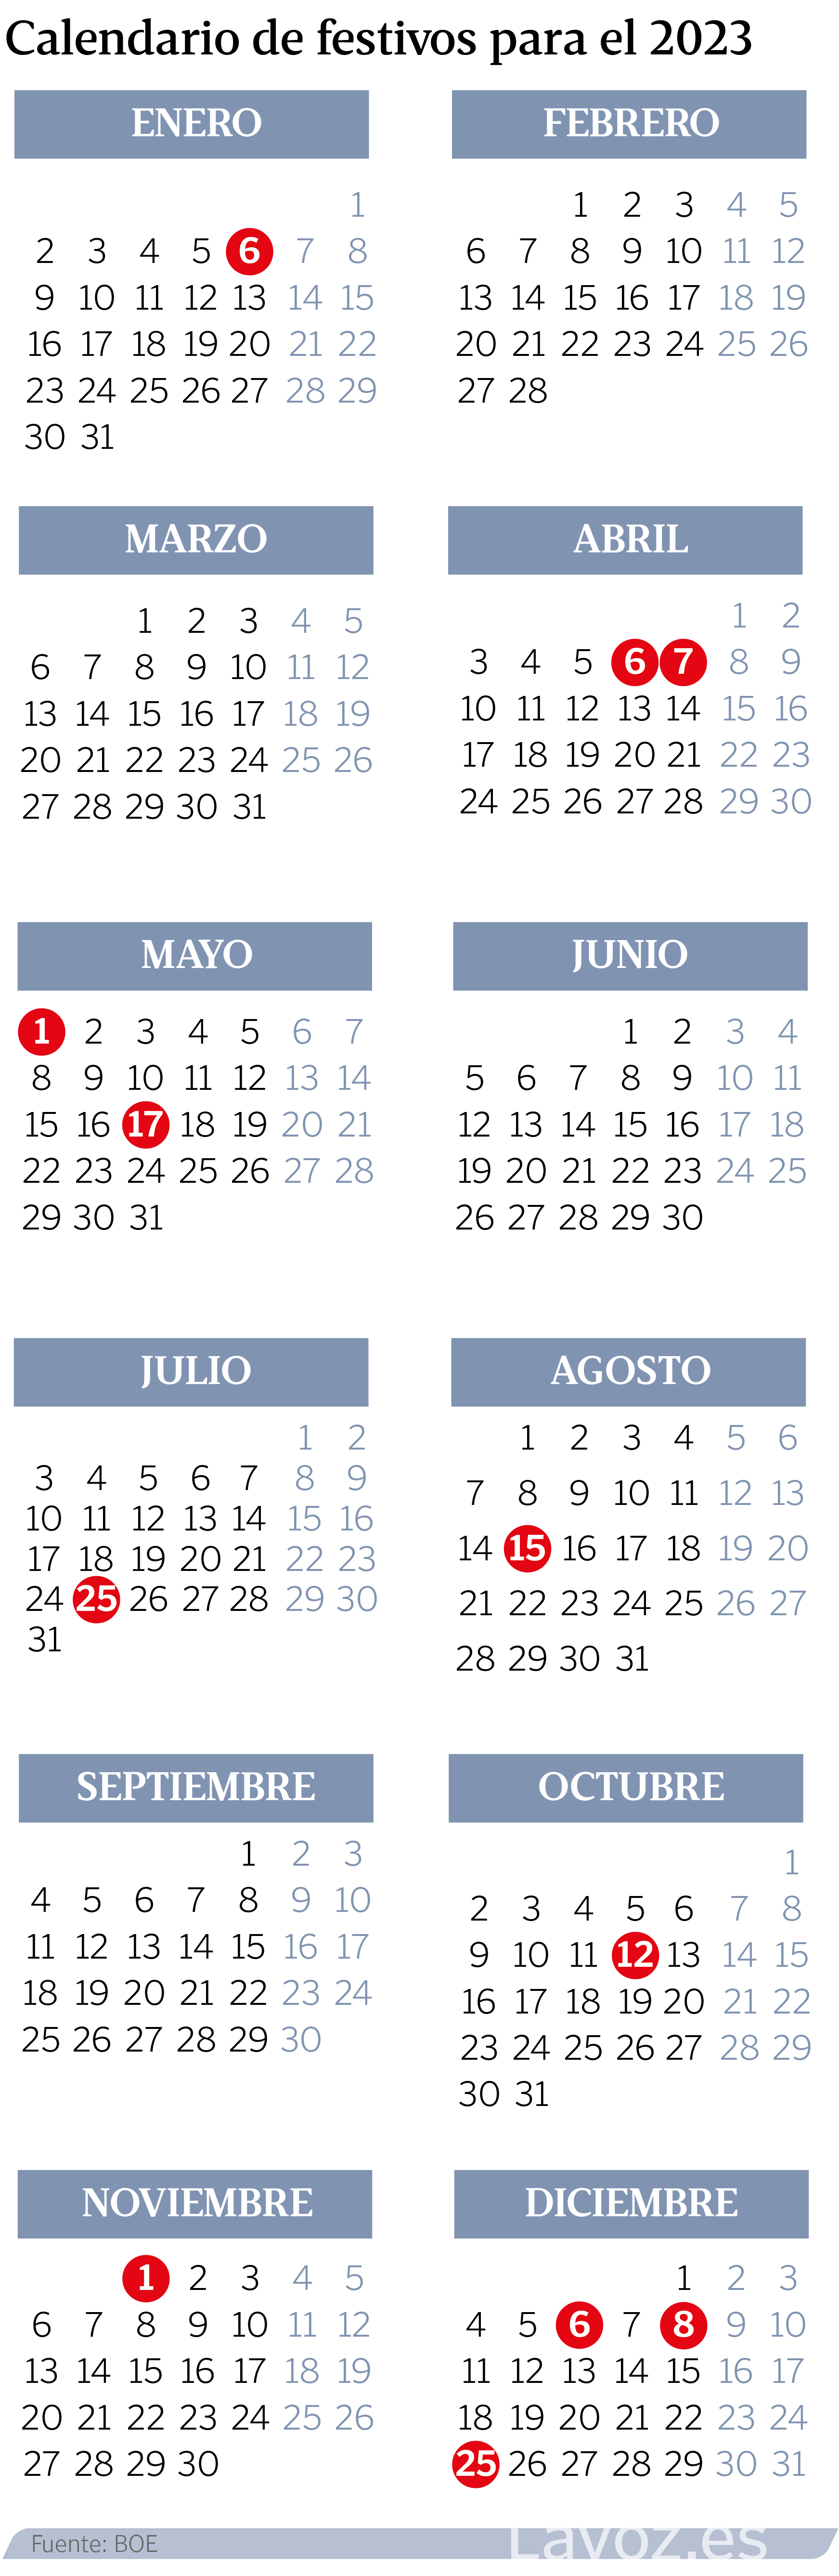 El Calendario Laboral De Festivos Nacionales Comunes En